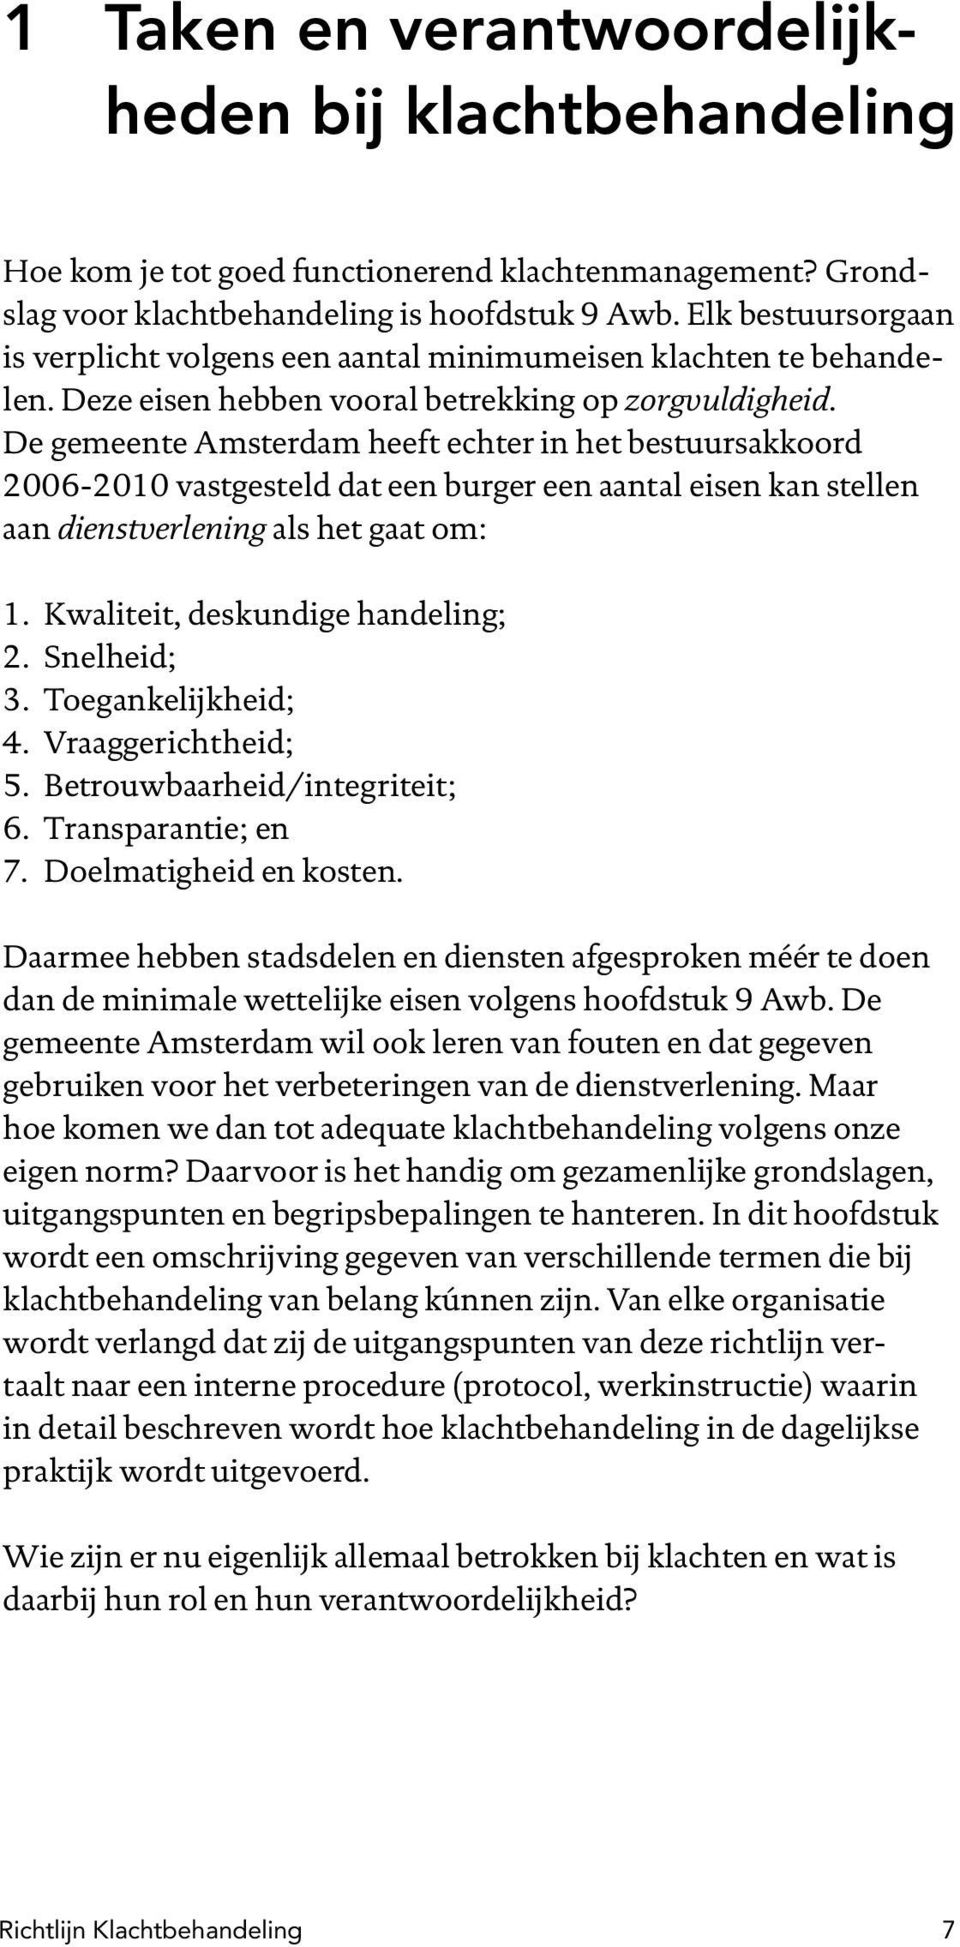 De gemeente Amsterdam heeft echter in het bestuursakkoord 2006-2010 vastgesteld dat een burger een aantal eisen kan stellen aan dienstverlening als het gaat om: 1. Kwaliteit, deskundige handeling; 2.